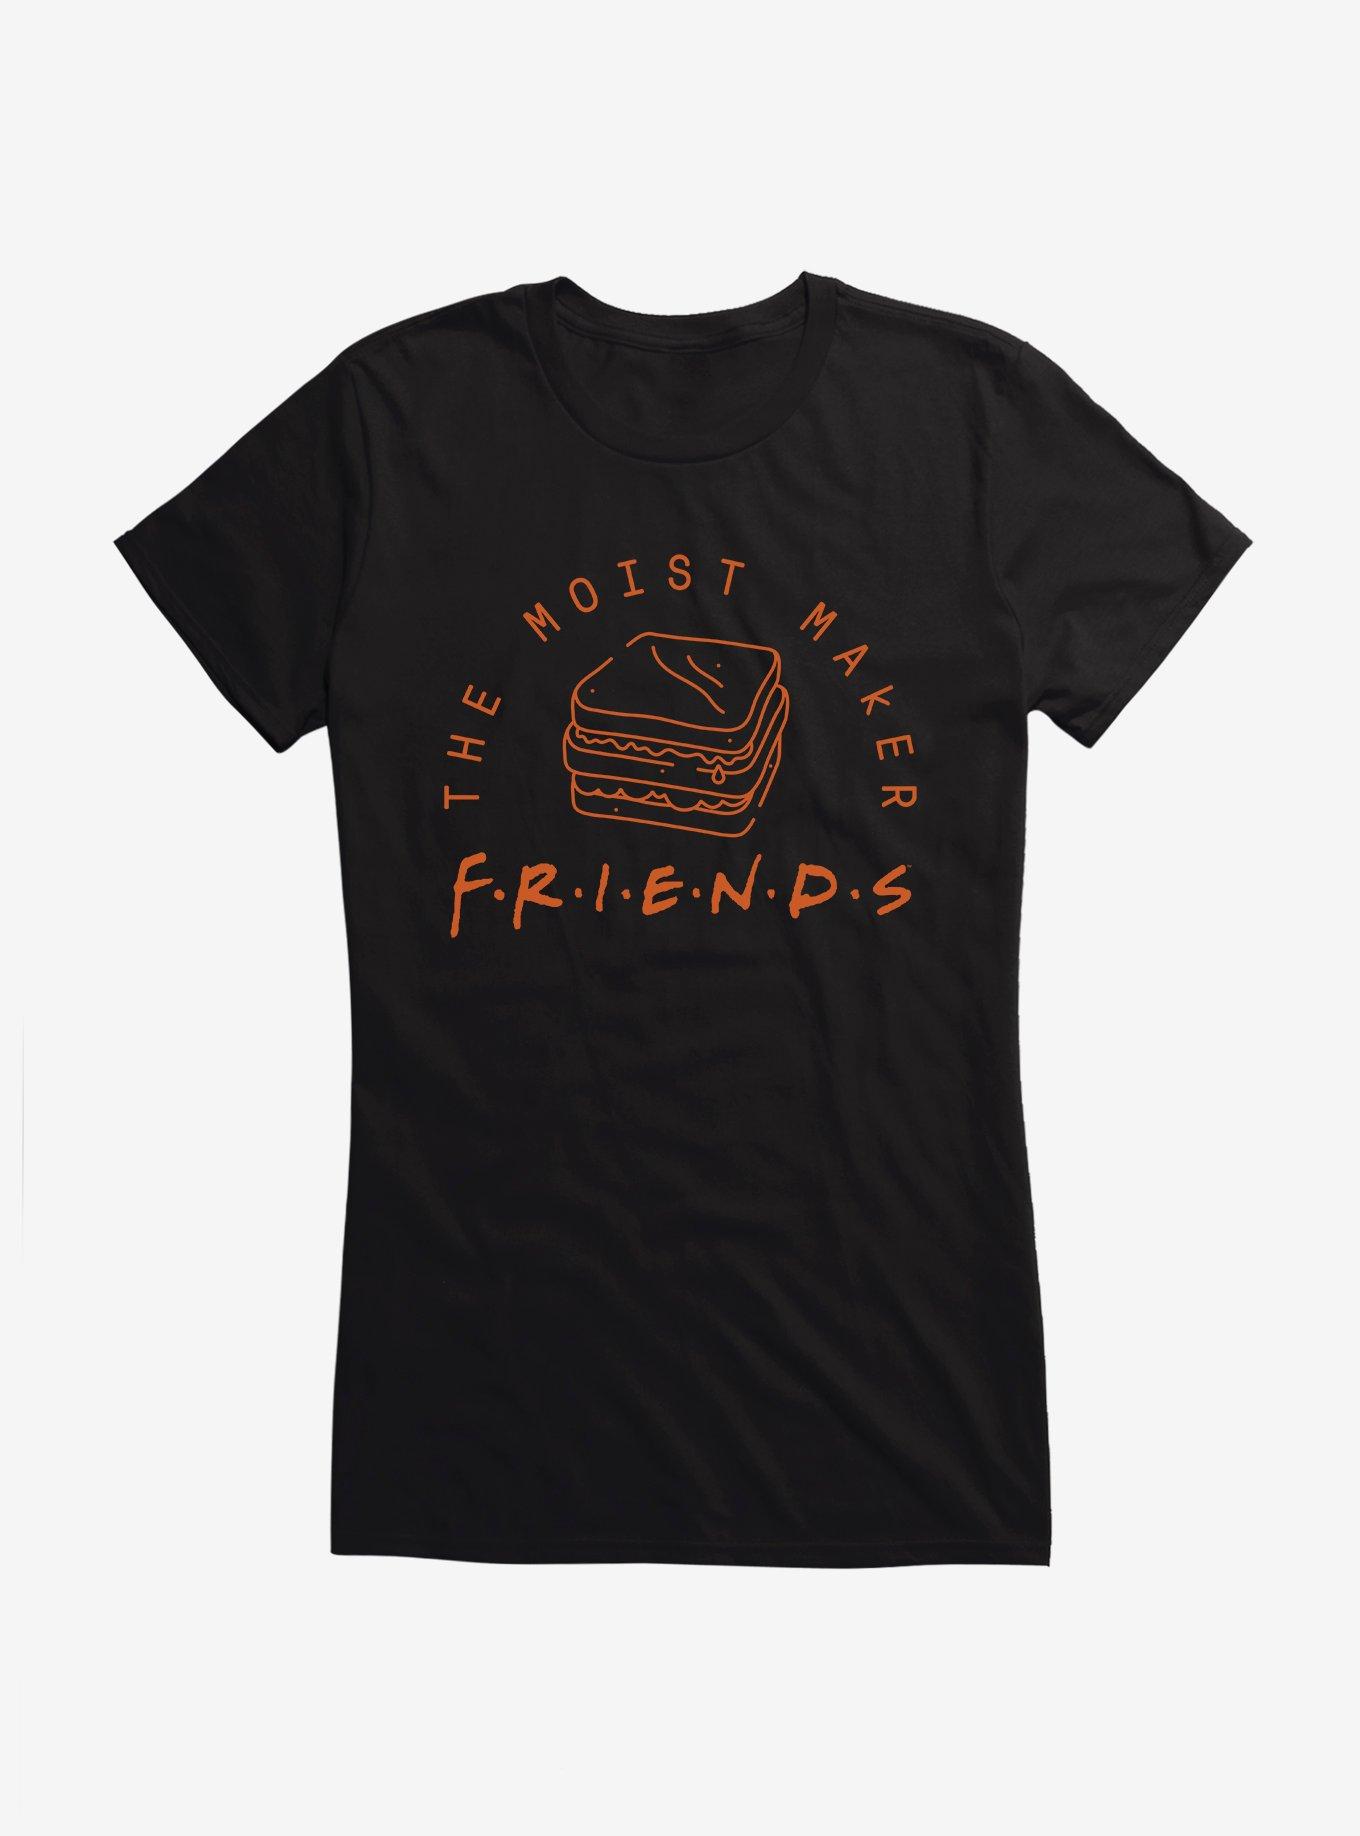 Friends The Moist Maker Girls T-Shirt